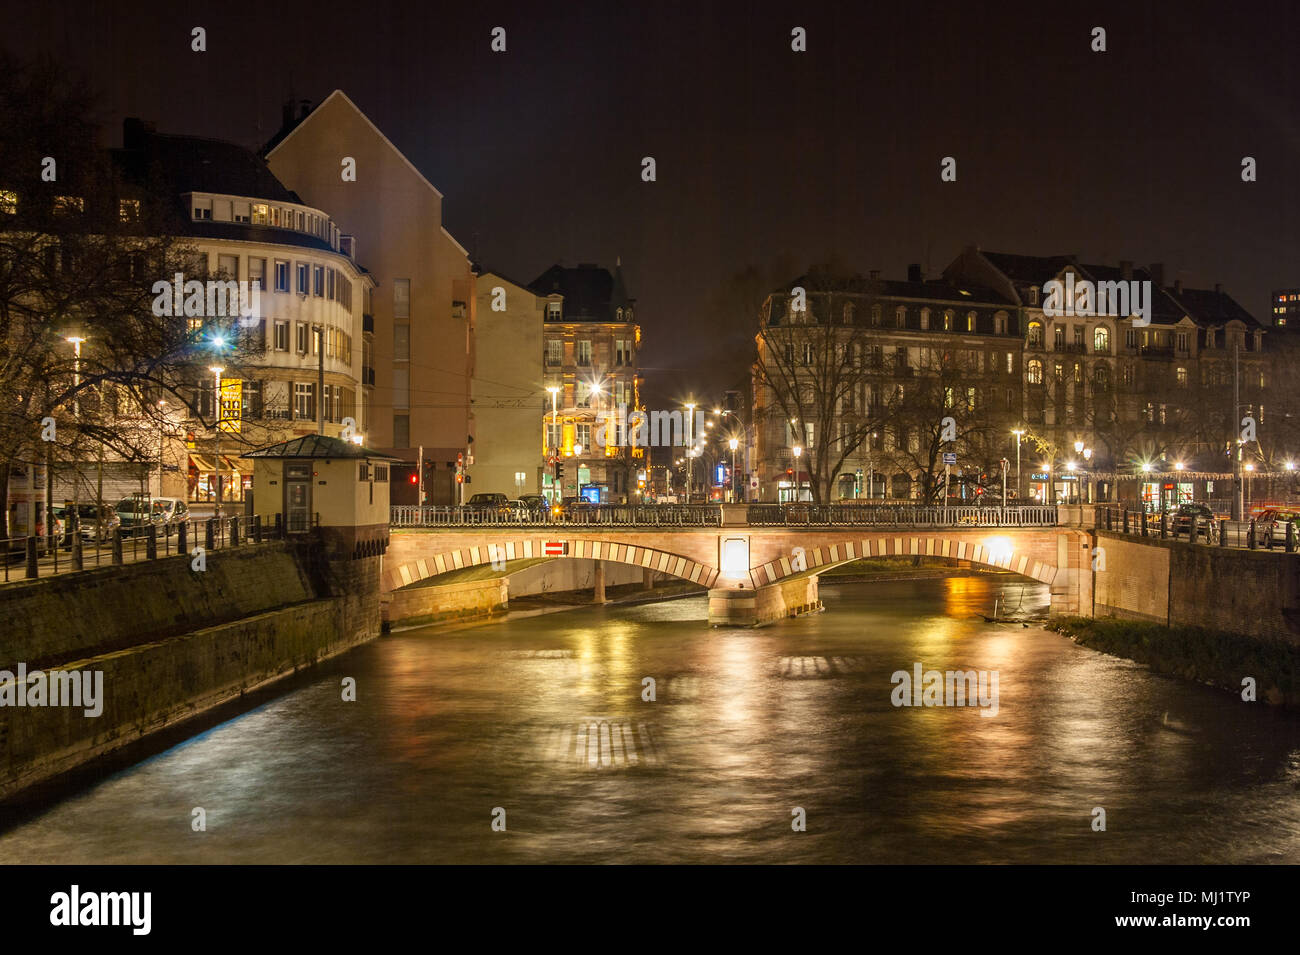 Pont National oltre il fiume Ill a Strasburgo - Alsazia, Francia Foto Stock